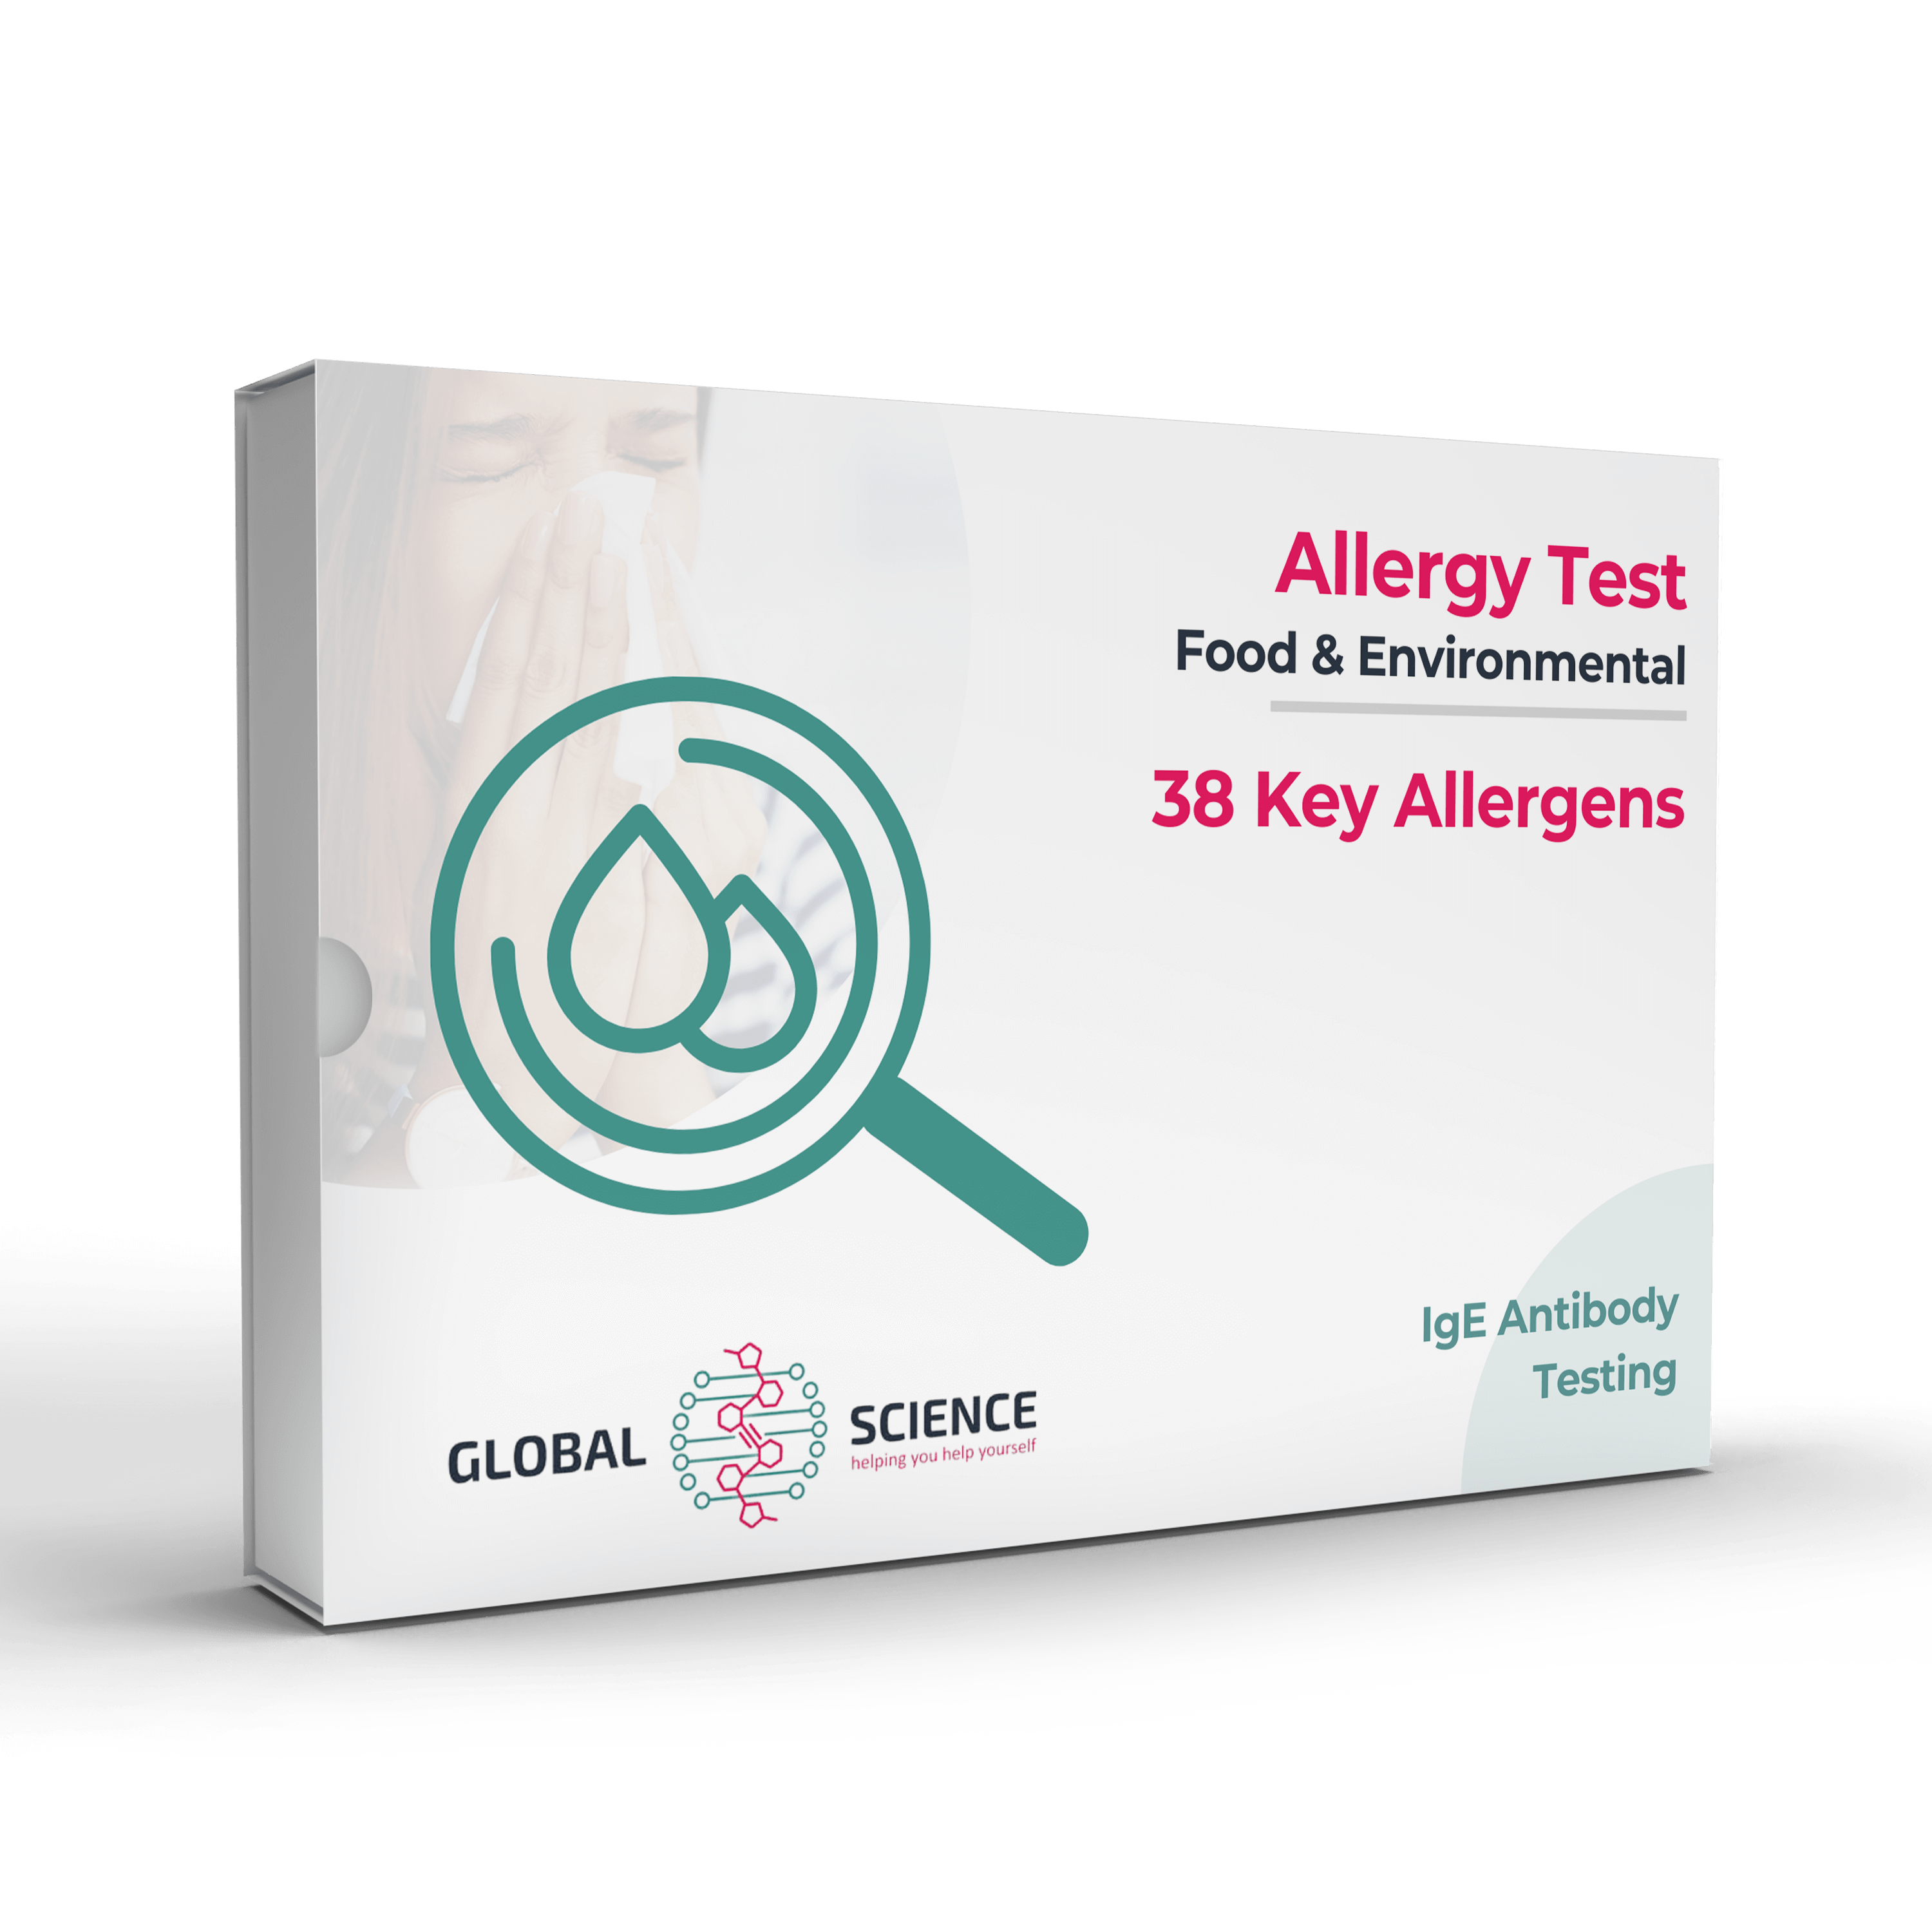 TMI TMA Allergy Test - Our tests